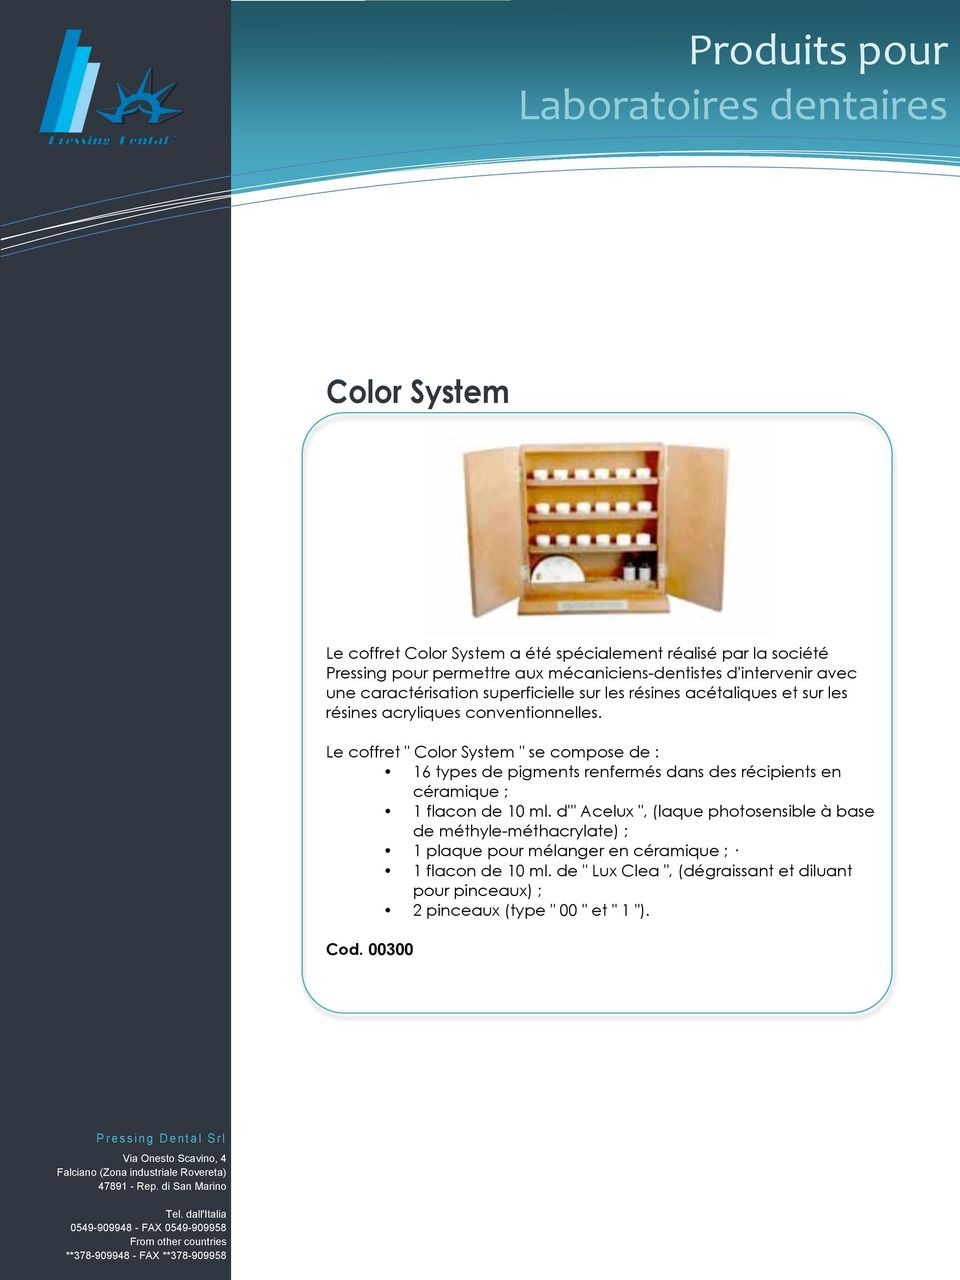 Le coffret " Color System " se compose de : 16 types de pigments renfermés dans des récipients en céramique ; 1 flacon de 10 ml.